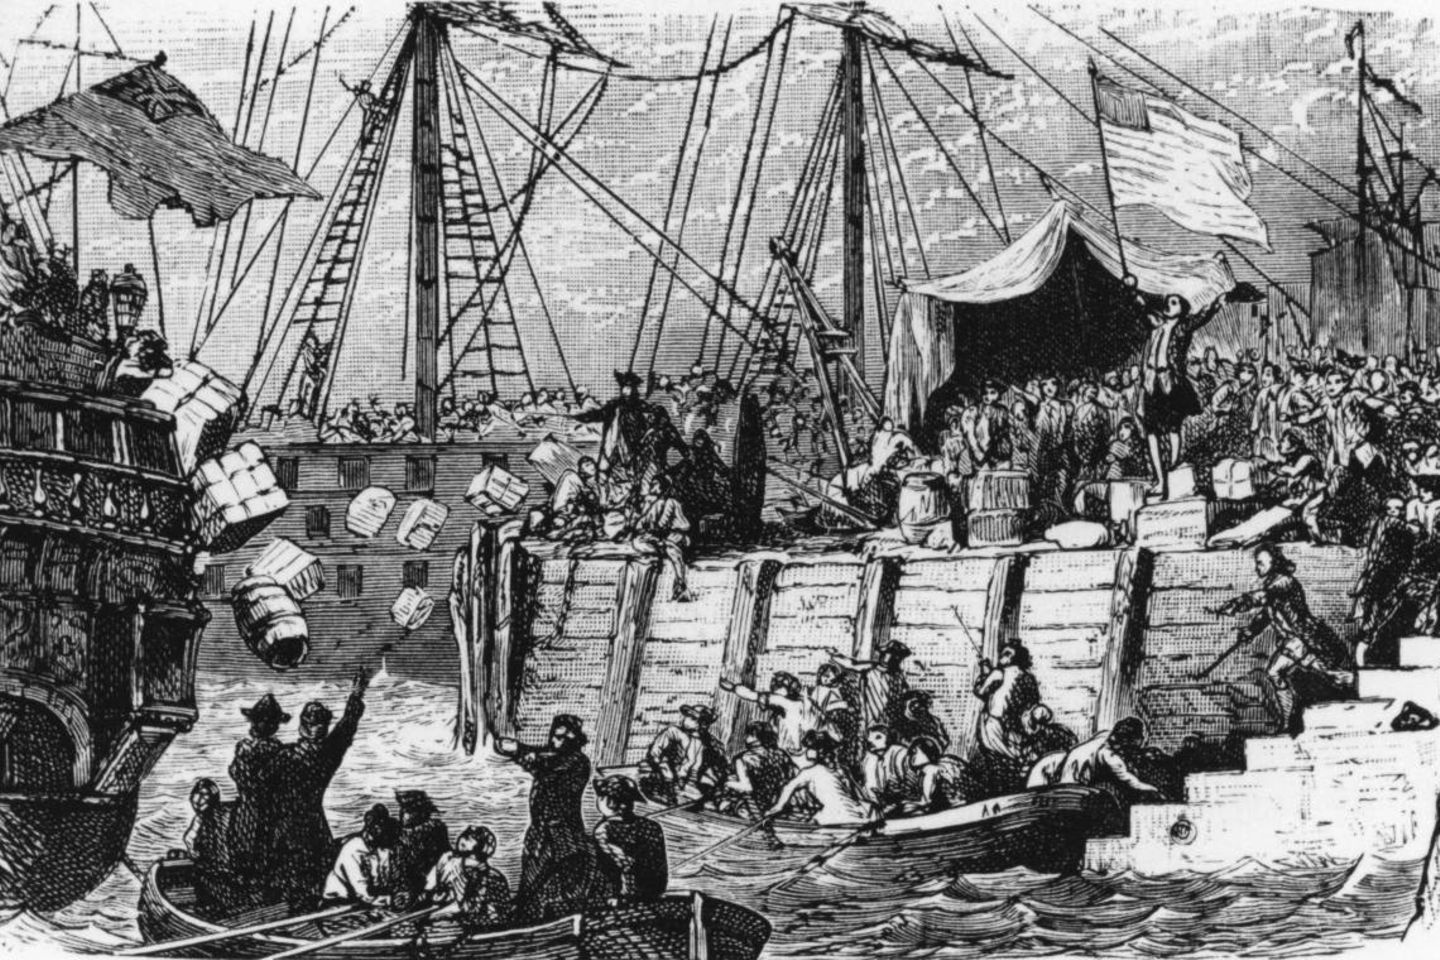 Am 16 Dezember 1773 stürmten 50 Bostoner drei Segelschiffe, die Tee geladen hatten und warfen diesen aus Protest ins Wasser.